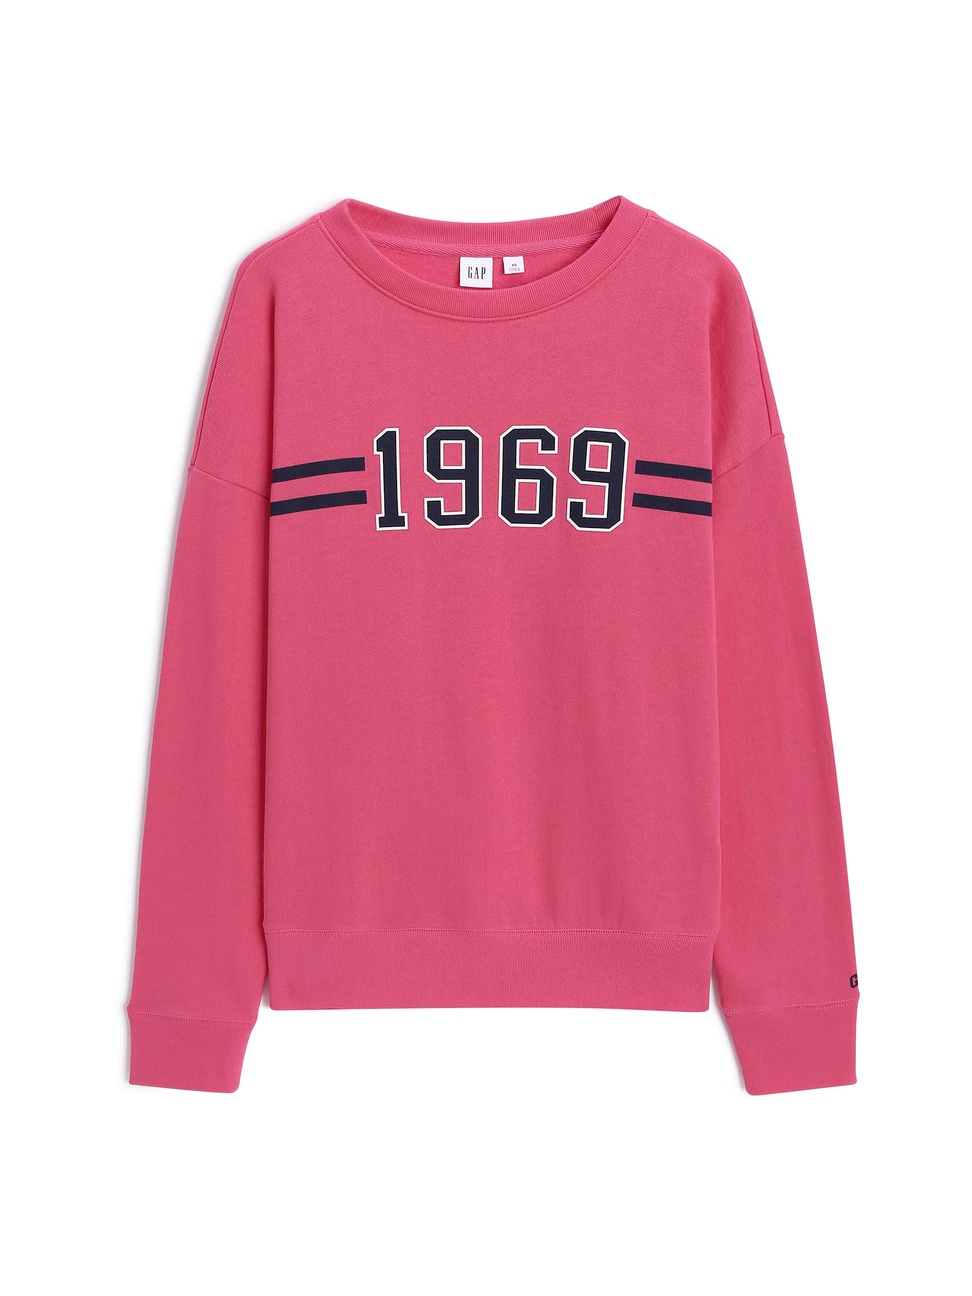 女裝|印花大學T 1969復古經典系列-粉红色